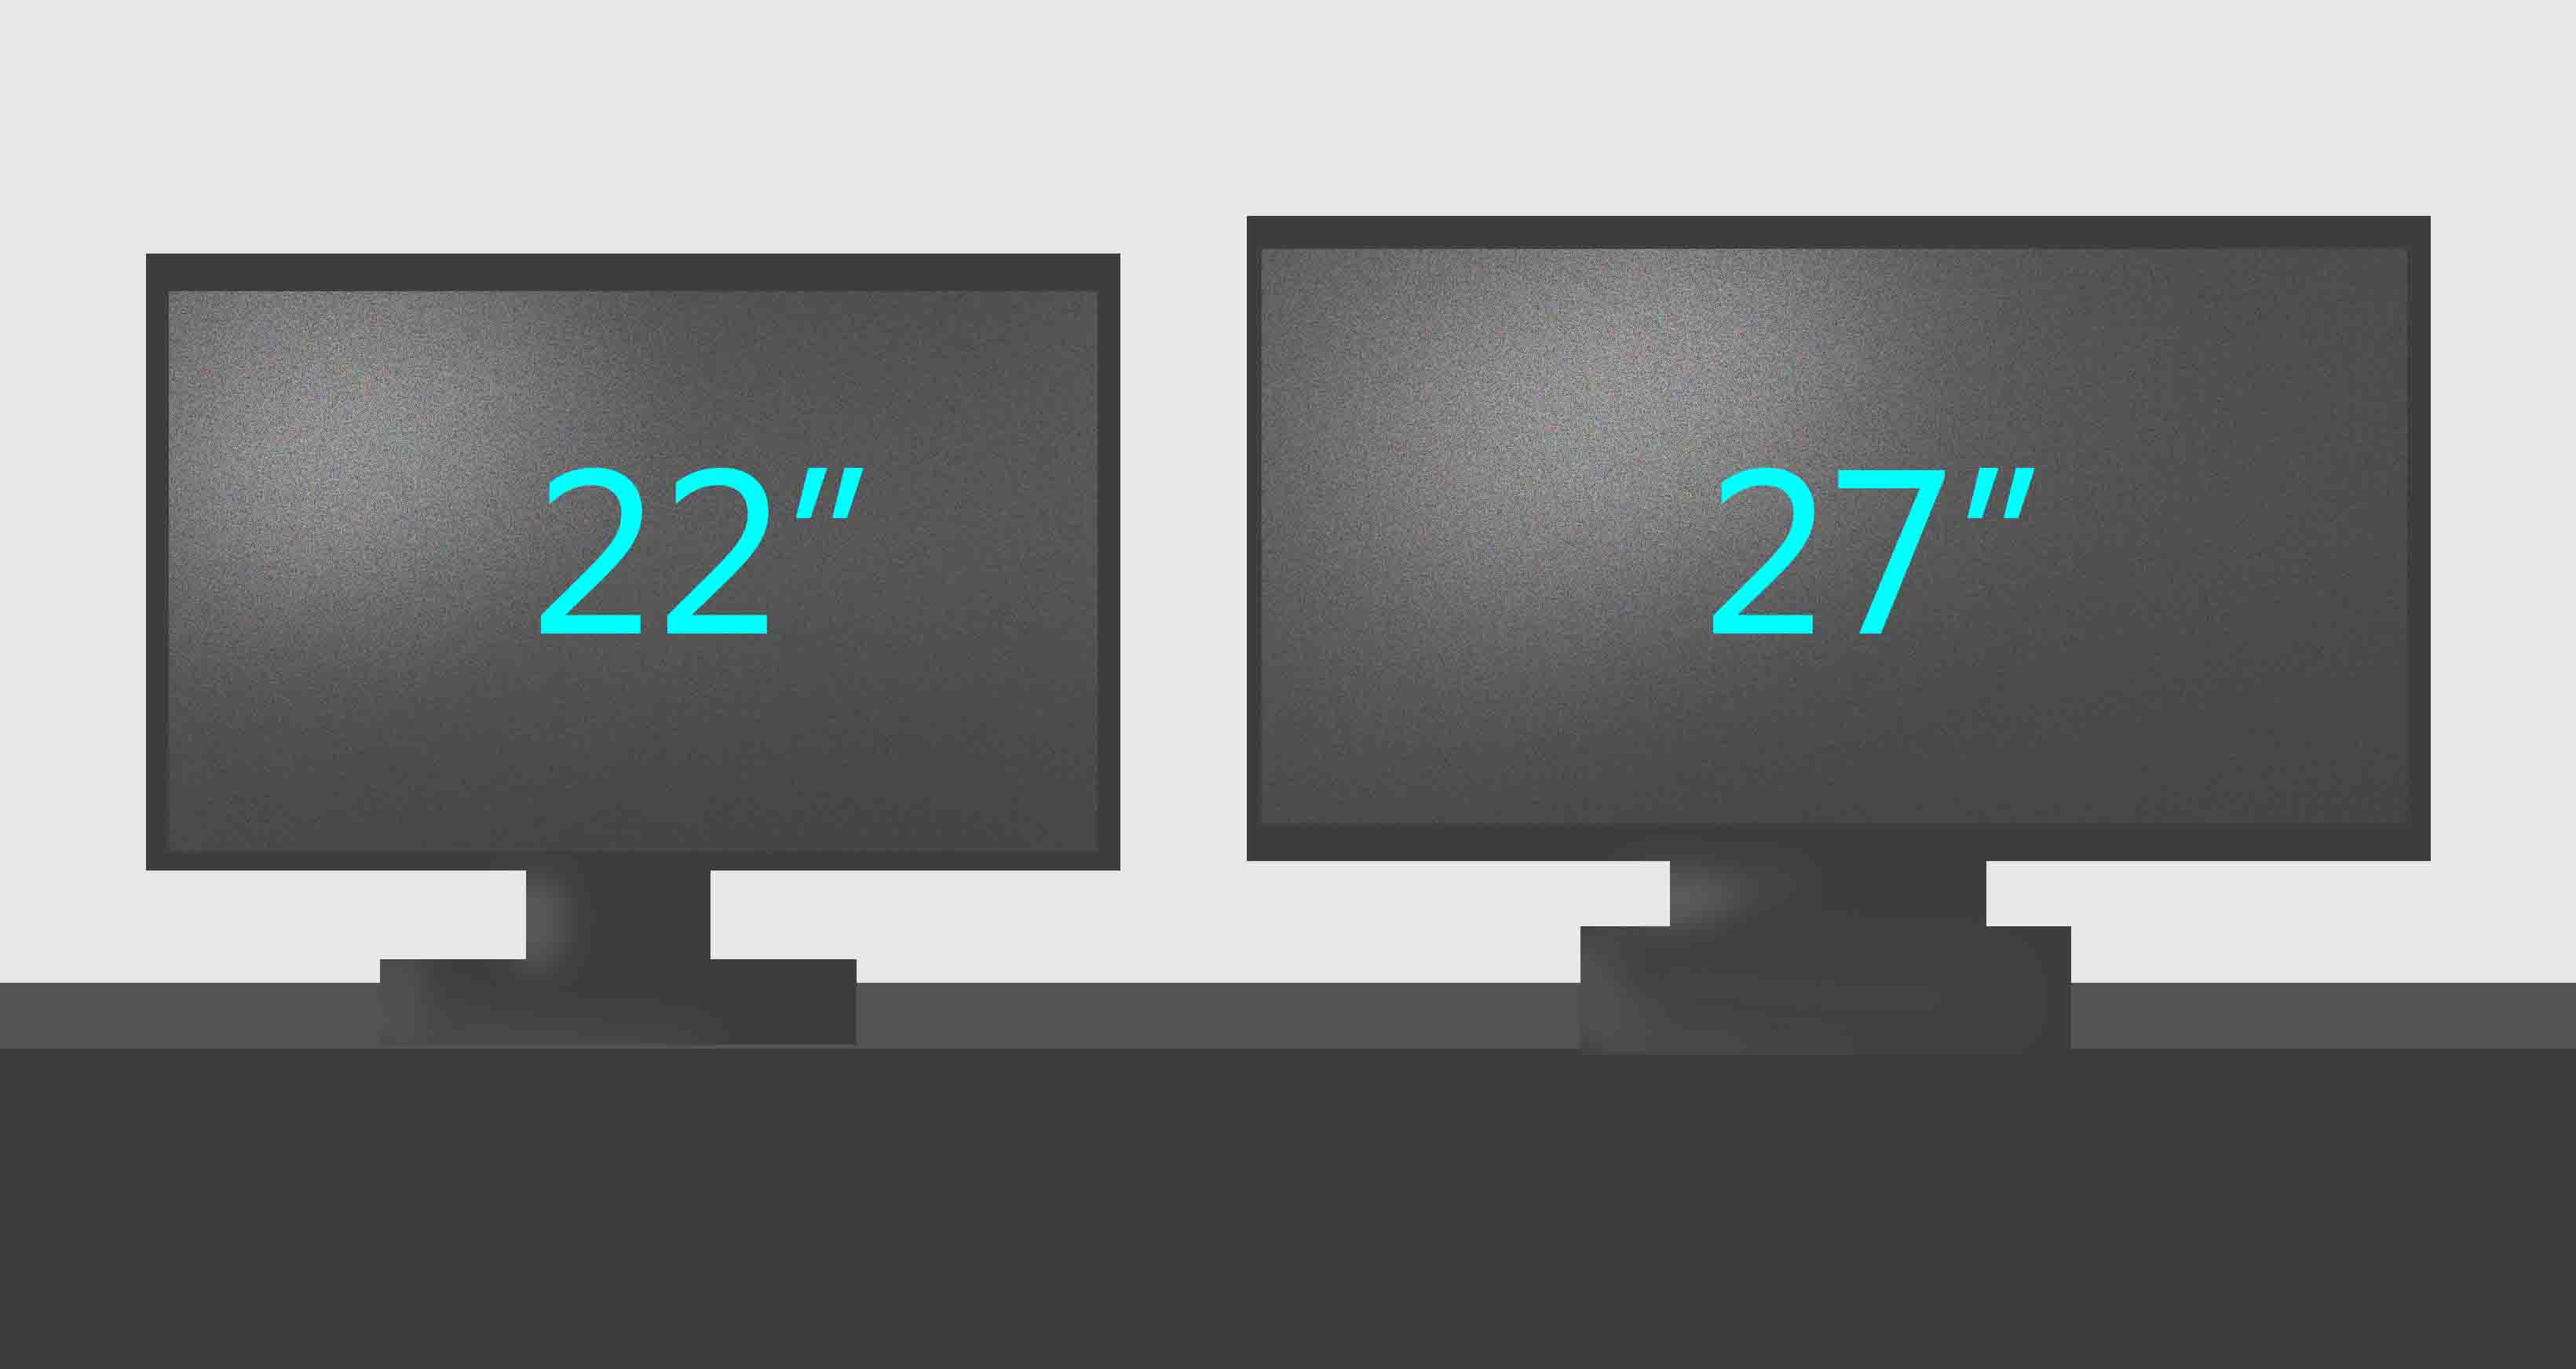 27寸显示器有多大尺寸?